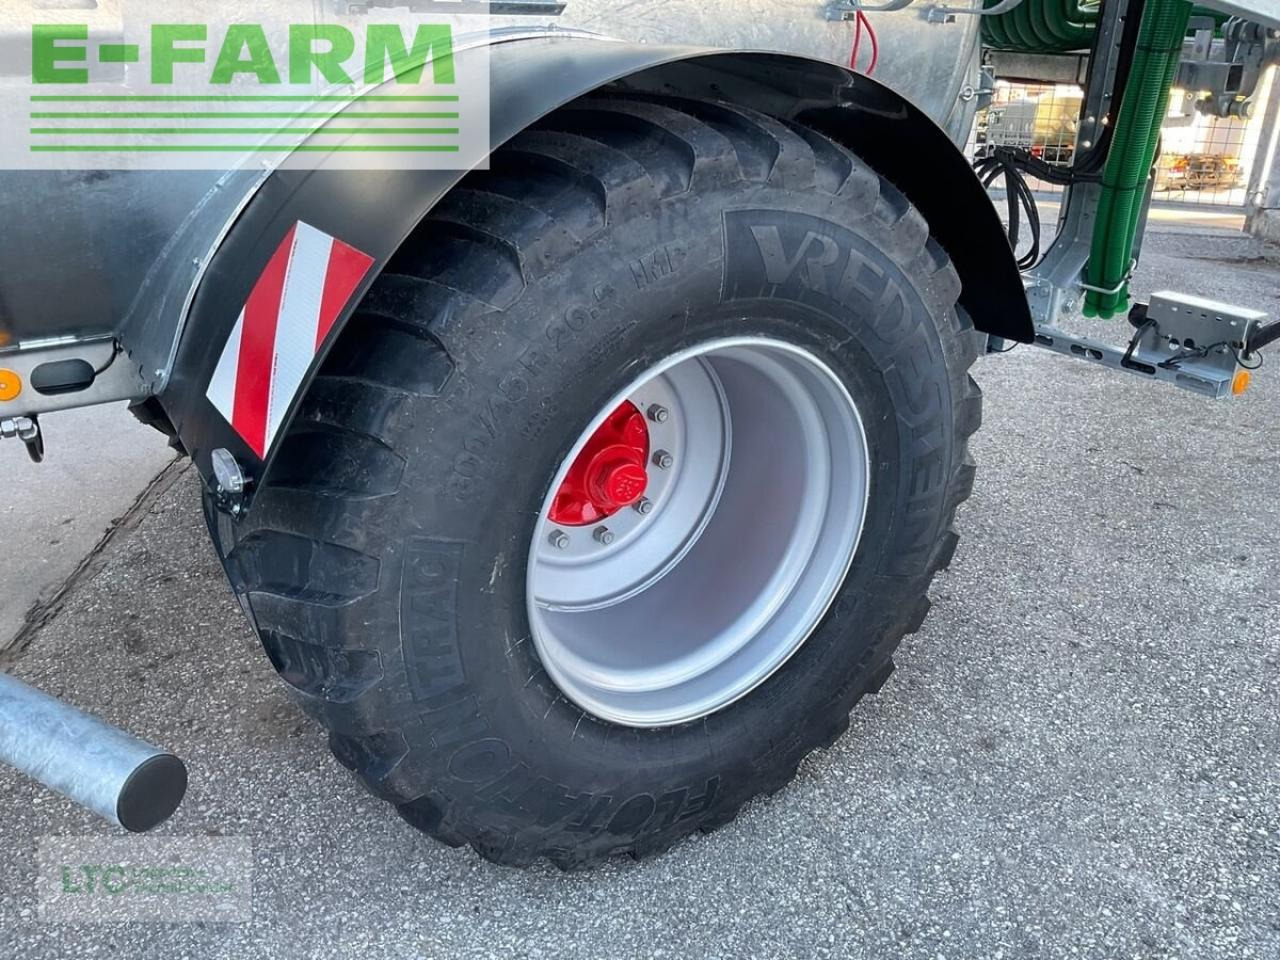 Farm tractor va 8600: picture 10